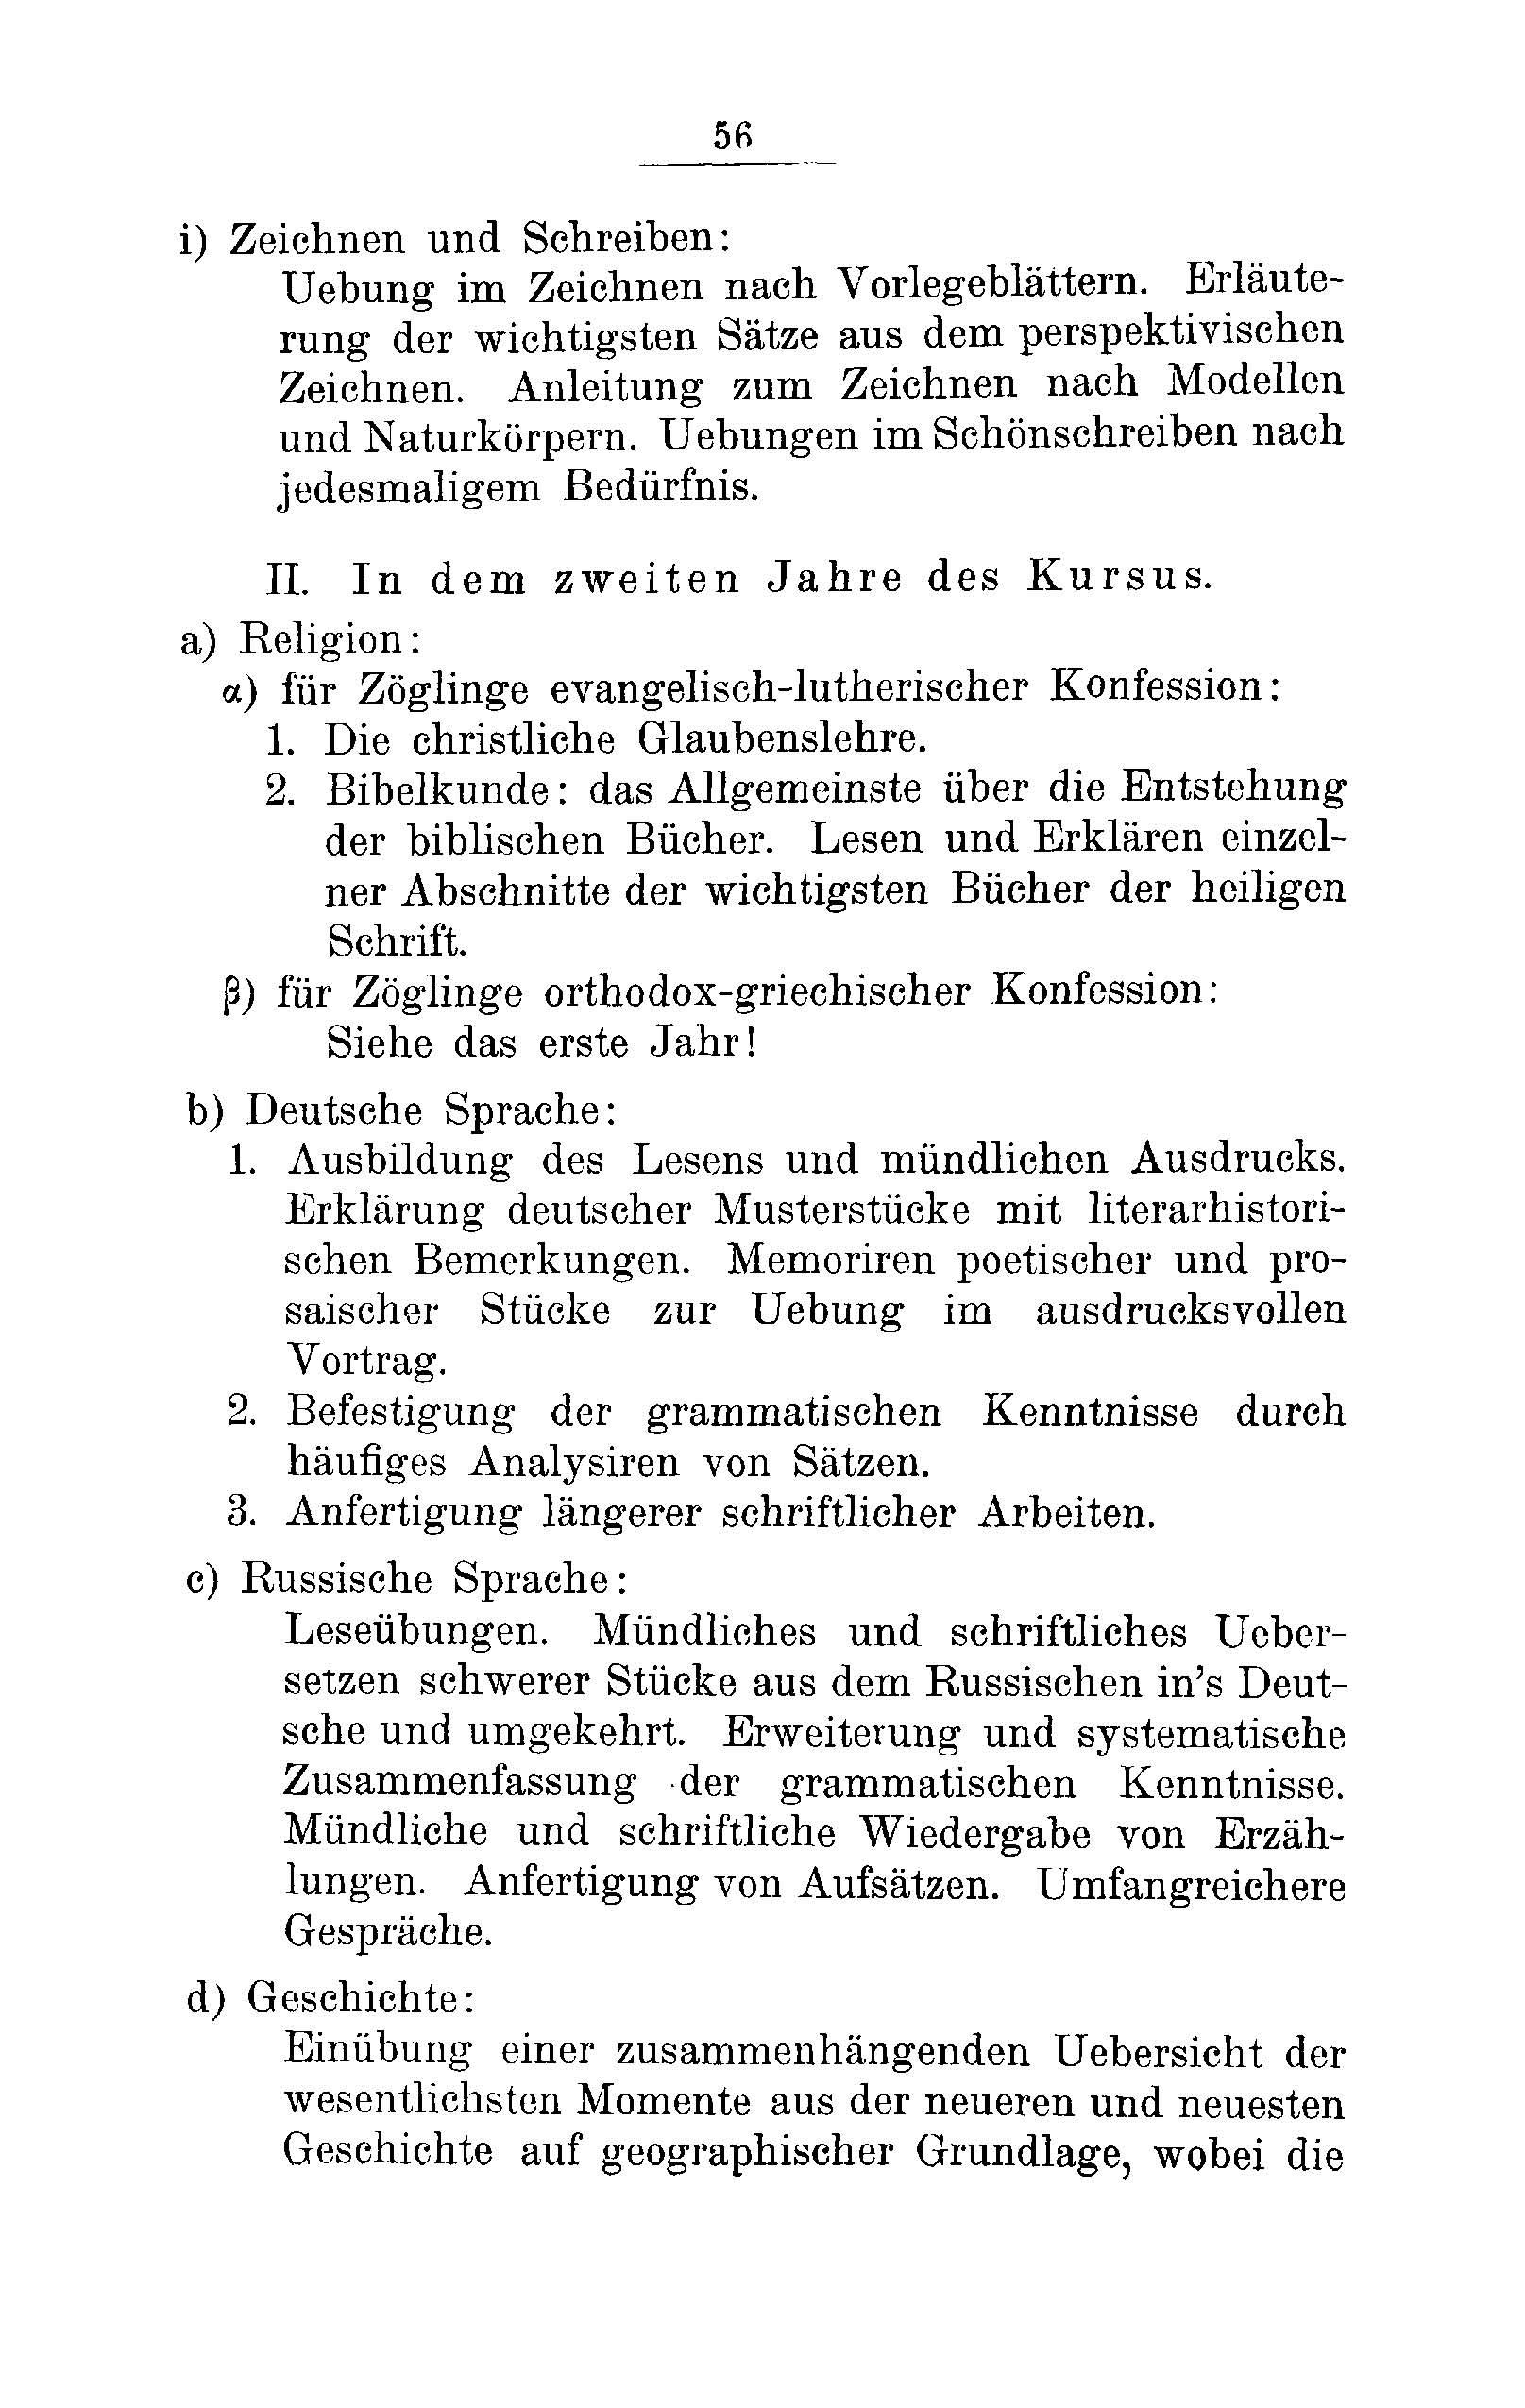 Das Erste Dorpatsche Lehrer-Seminar (1890) | 59. Haupttext